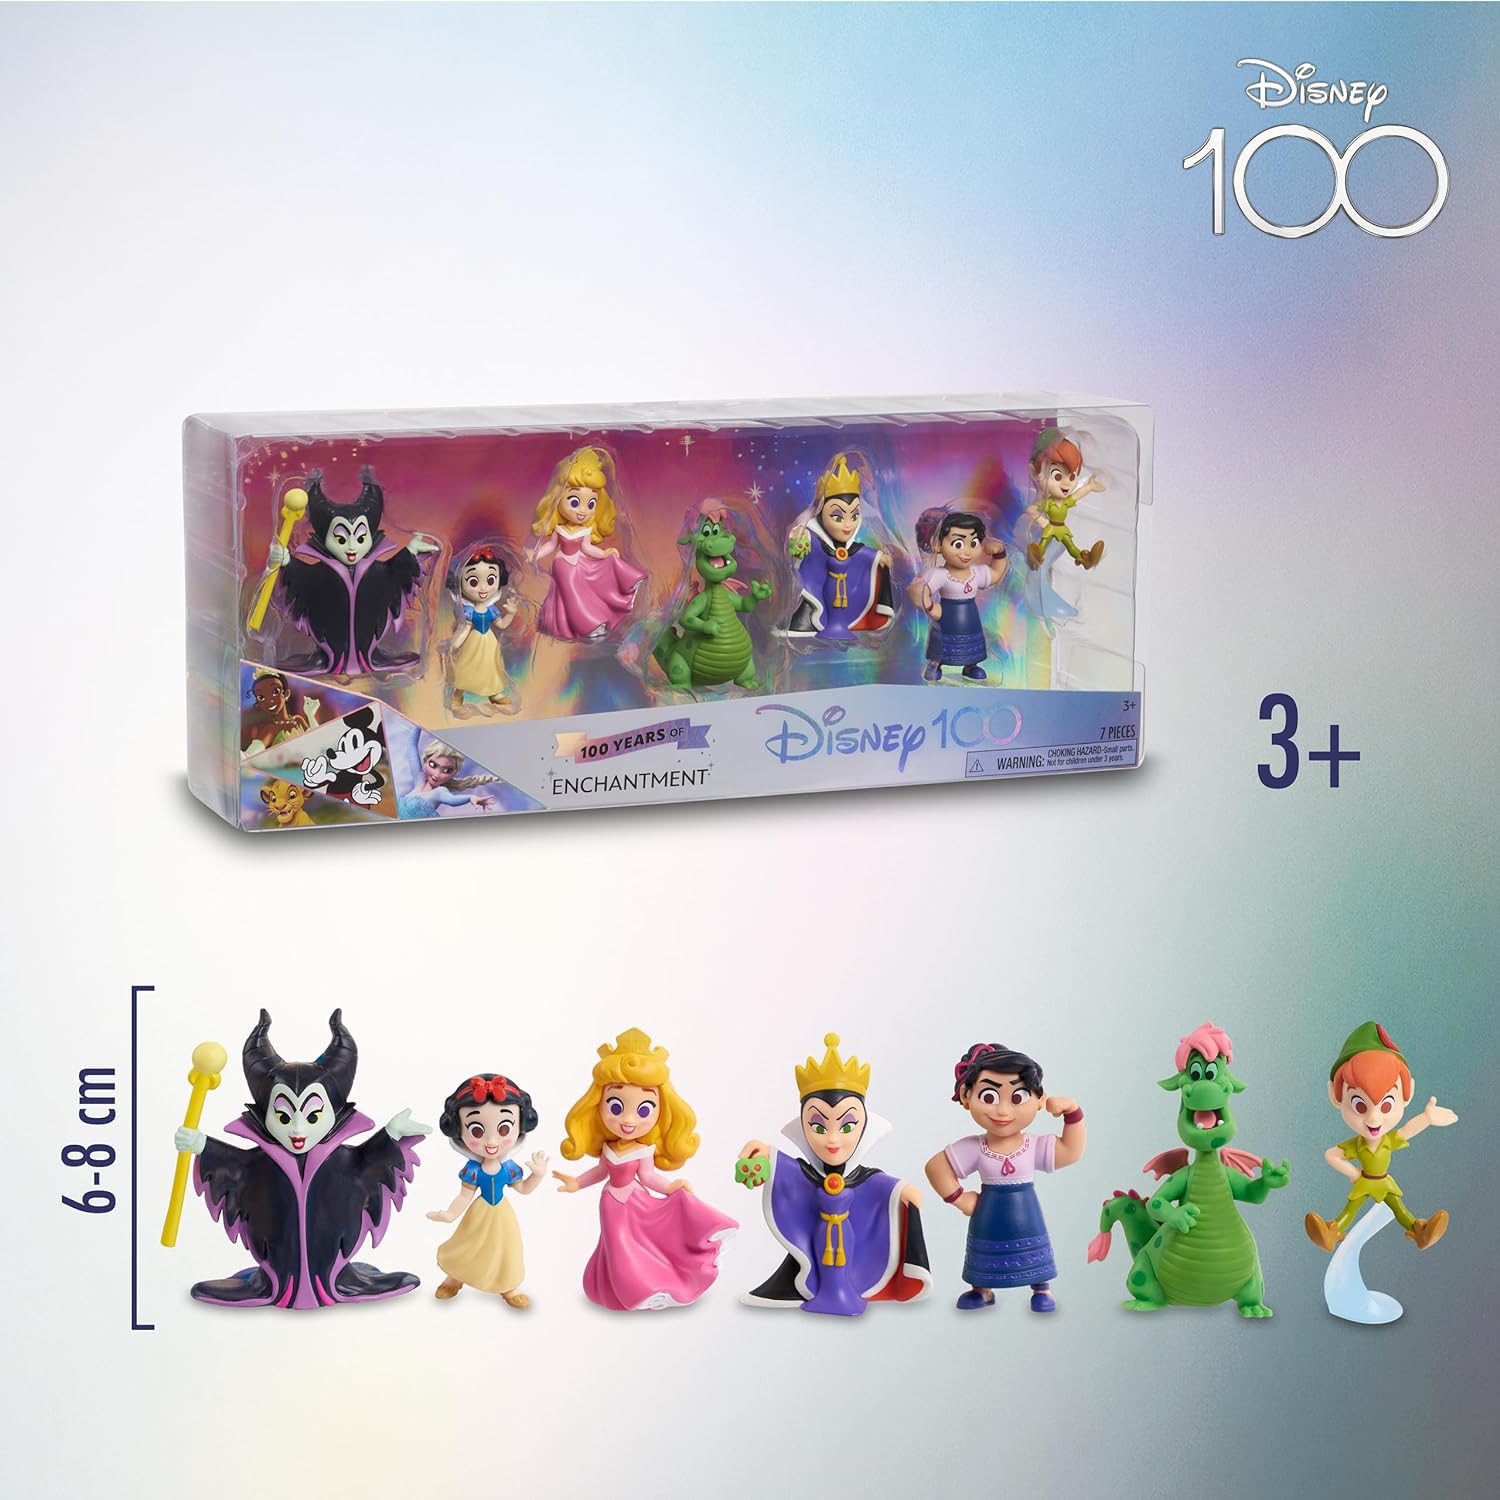 Disney 100 - Pack Enchantment, giocattolo da collezione con personaggi  Disney, include 8 figure diverse, licenza ufficiale al 10